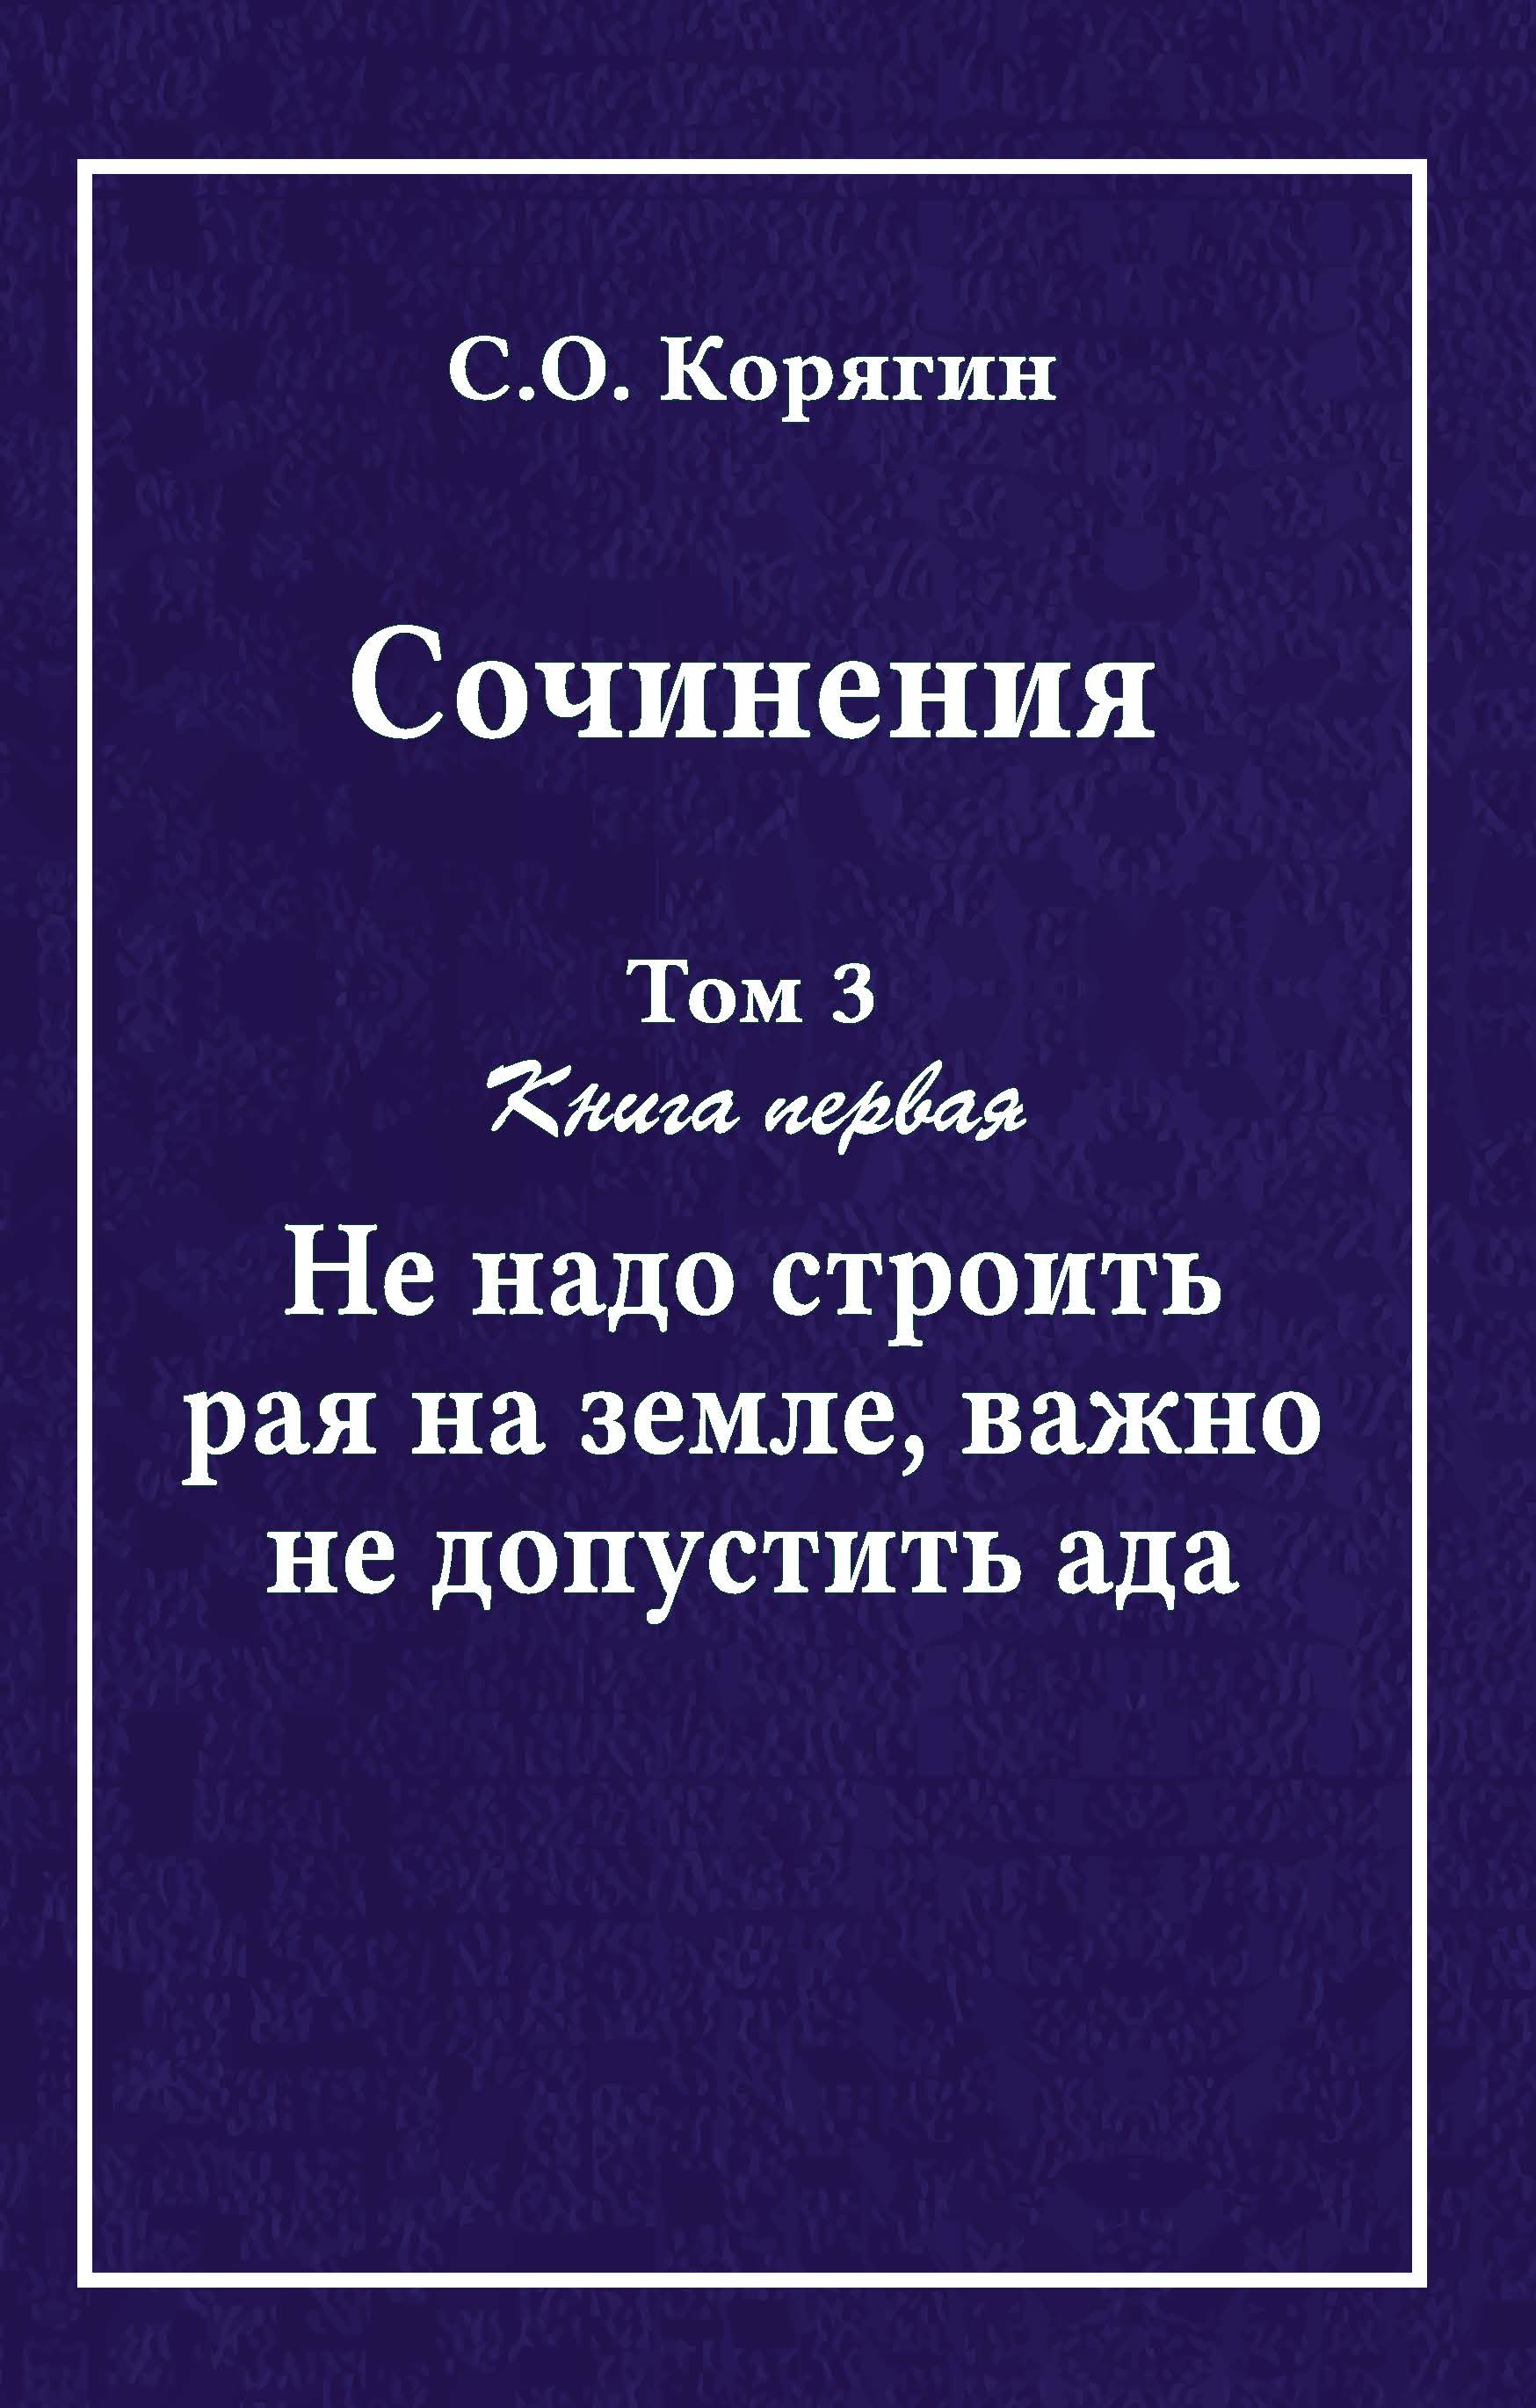 Корягин С. О. Сочинения в 3 томах. Том 3, книга первая